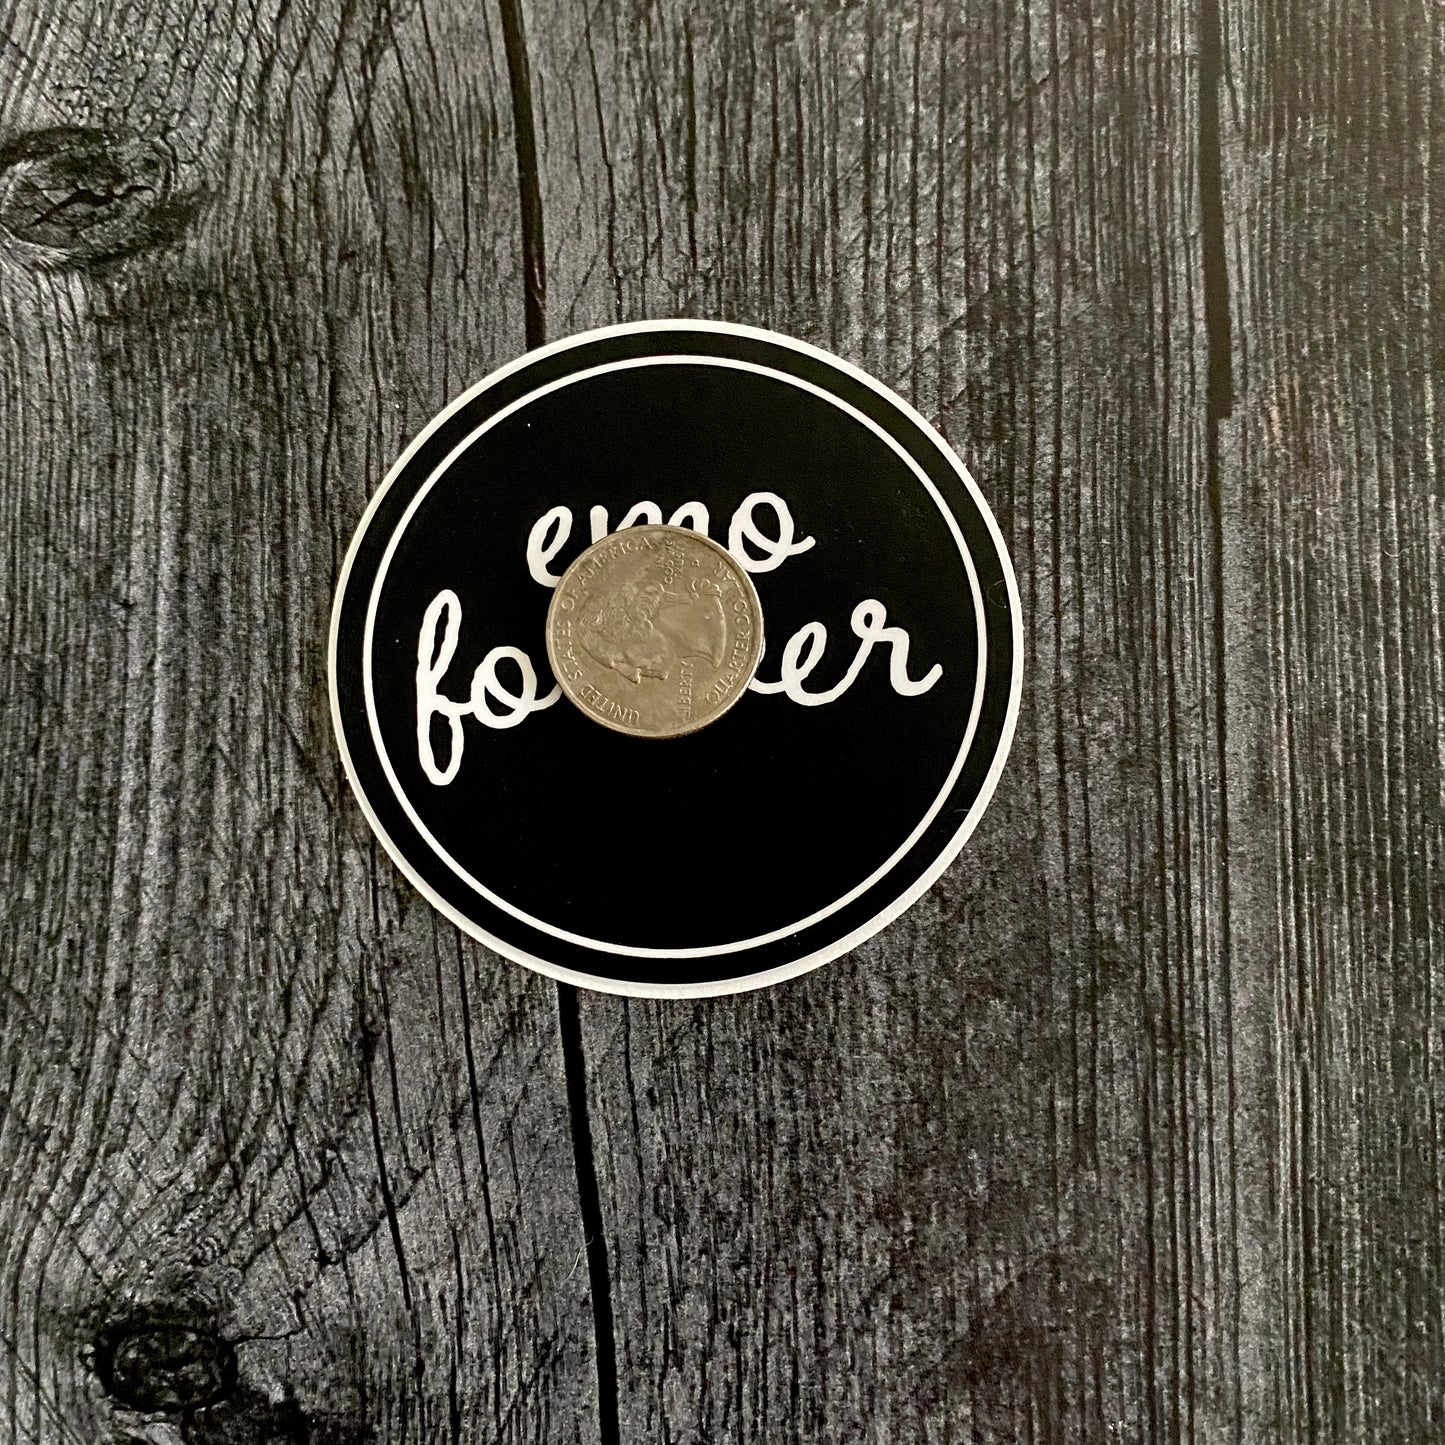 Emo Forever Sticker